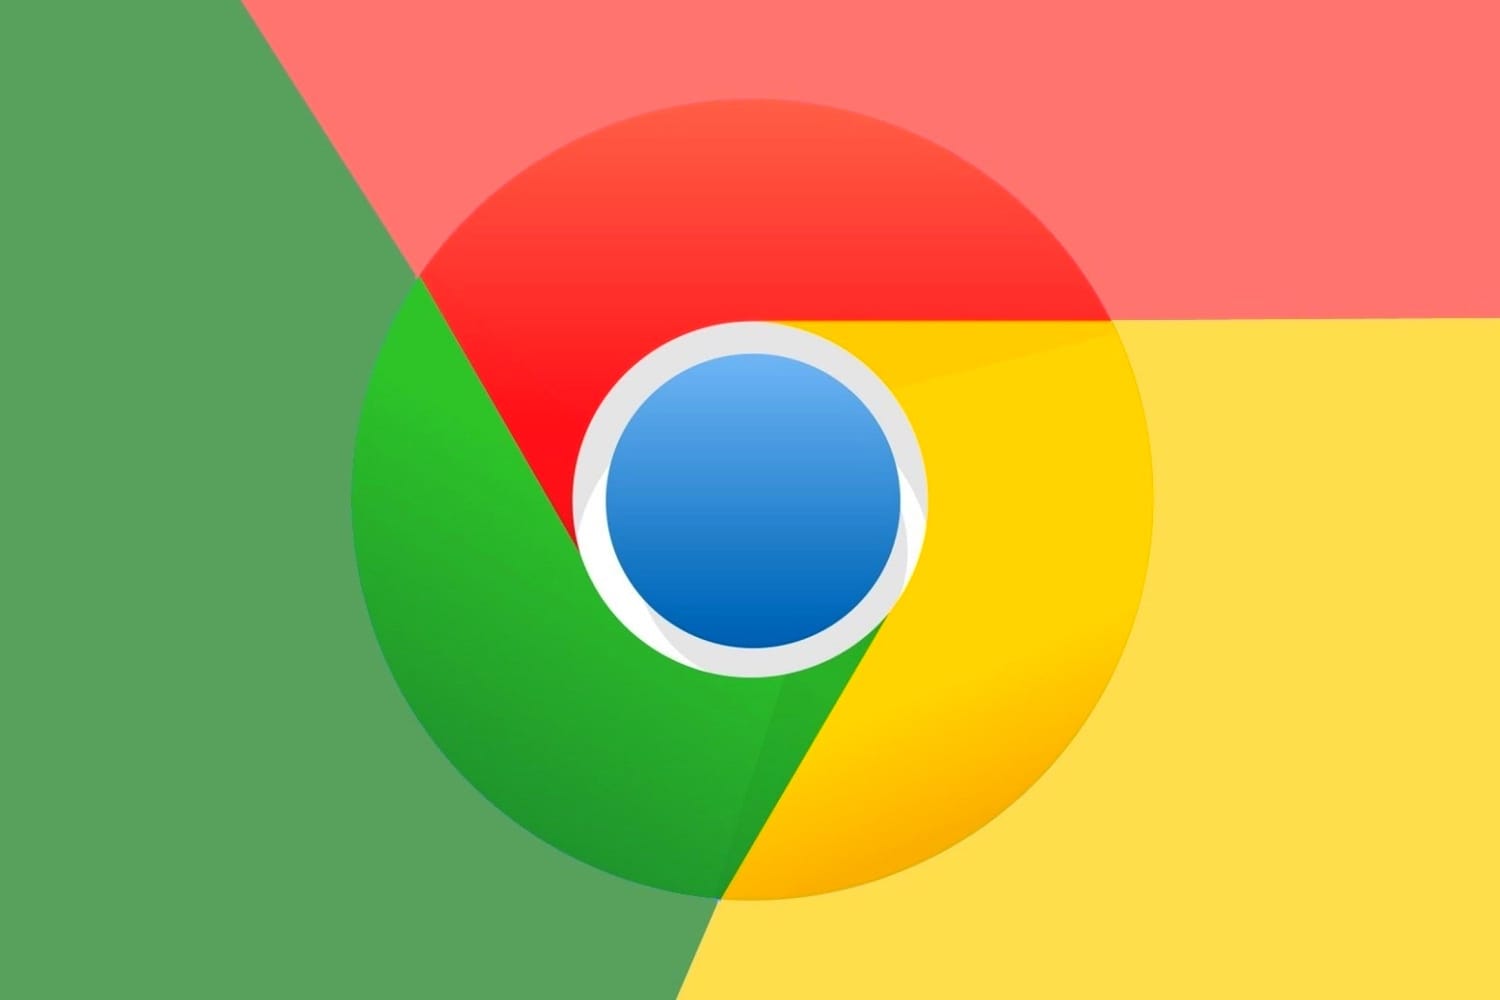 O navegador Google Chrome obtém o recurso de agrupamento de guias com visualização em grade no Android